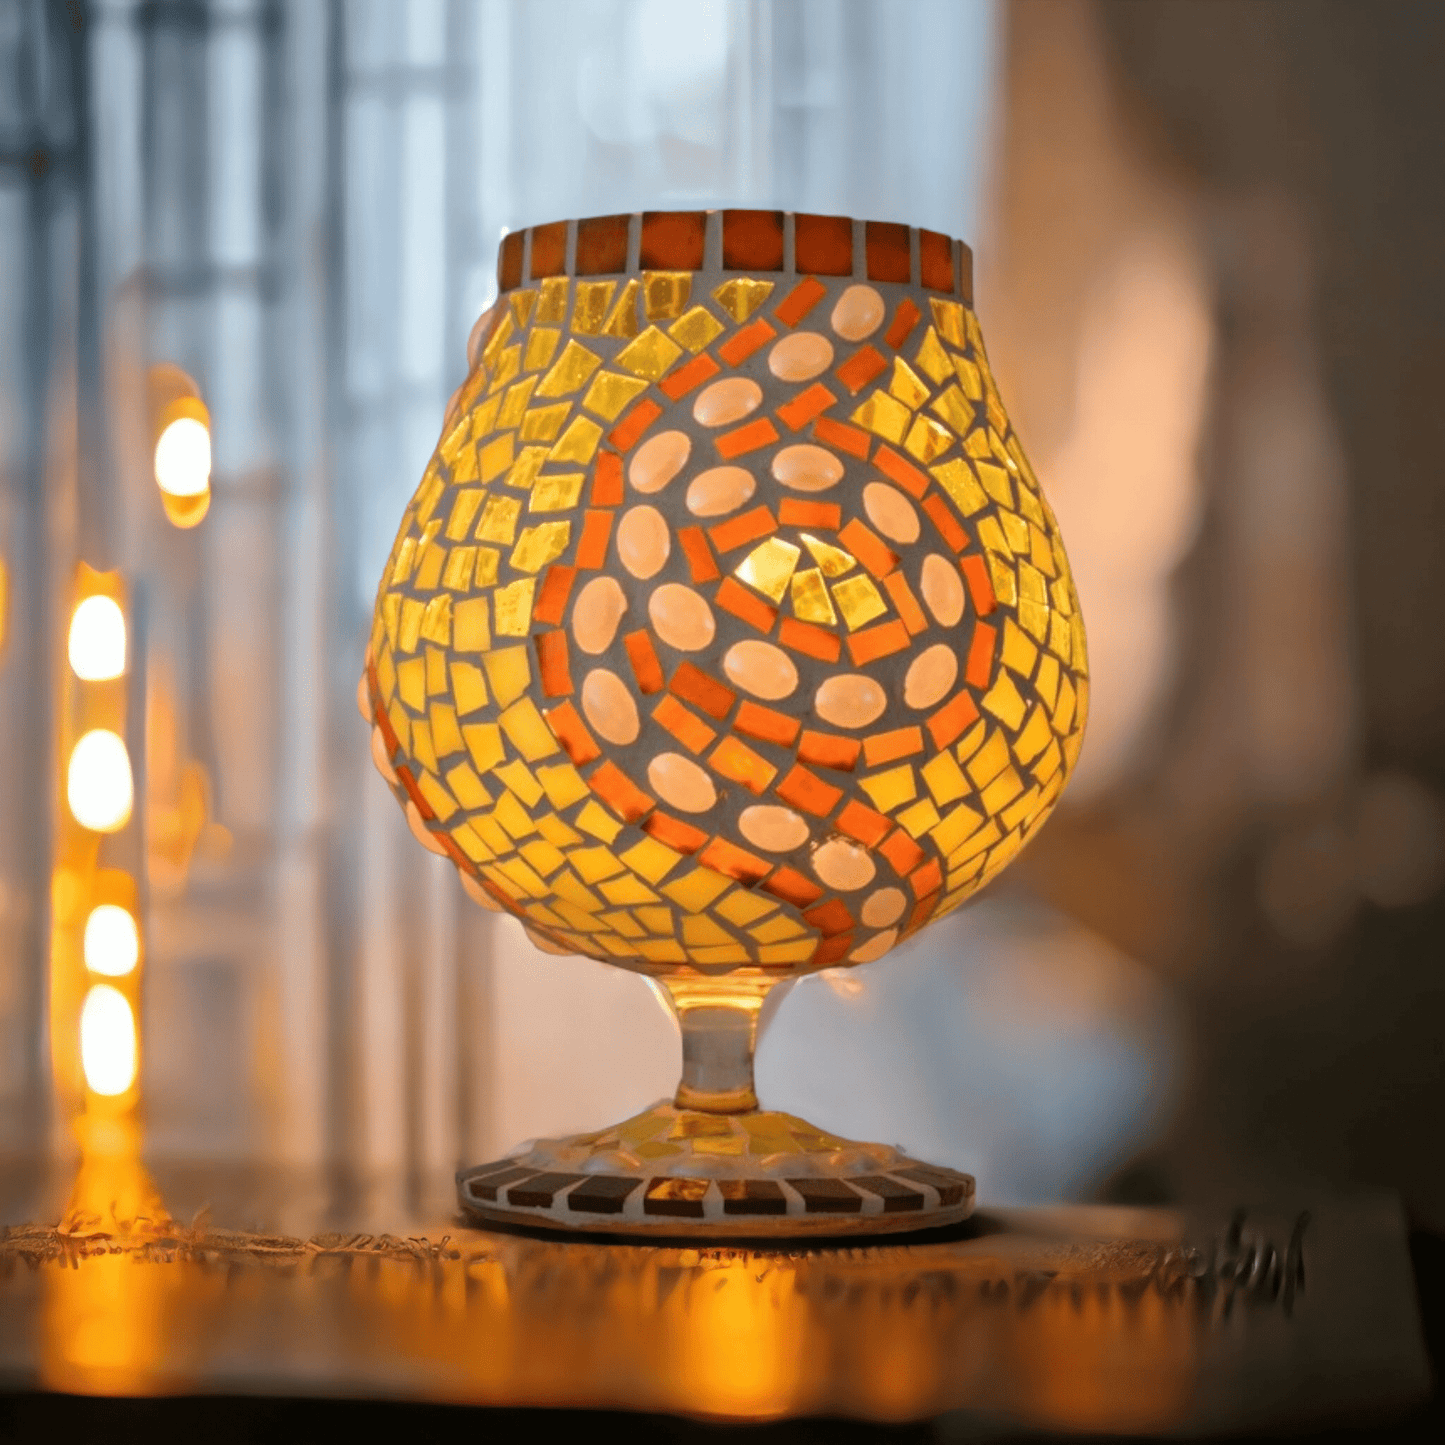 Mosaik Windlicht Perlentraum gelb 17 cm hoch – Einzelstück - handgemacht - upcycling - Mosaikkasten aus alt mach neu braun